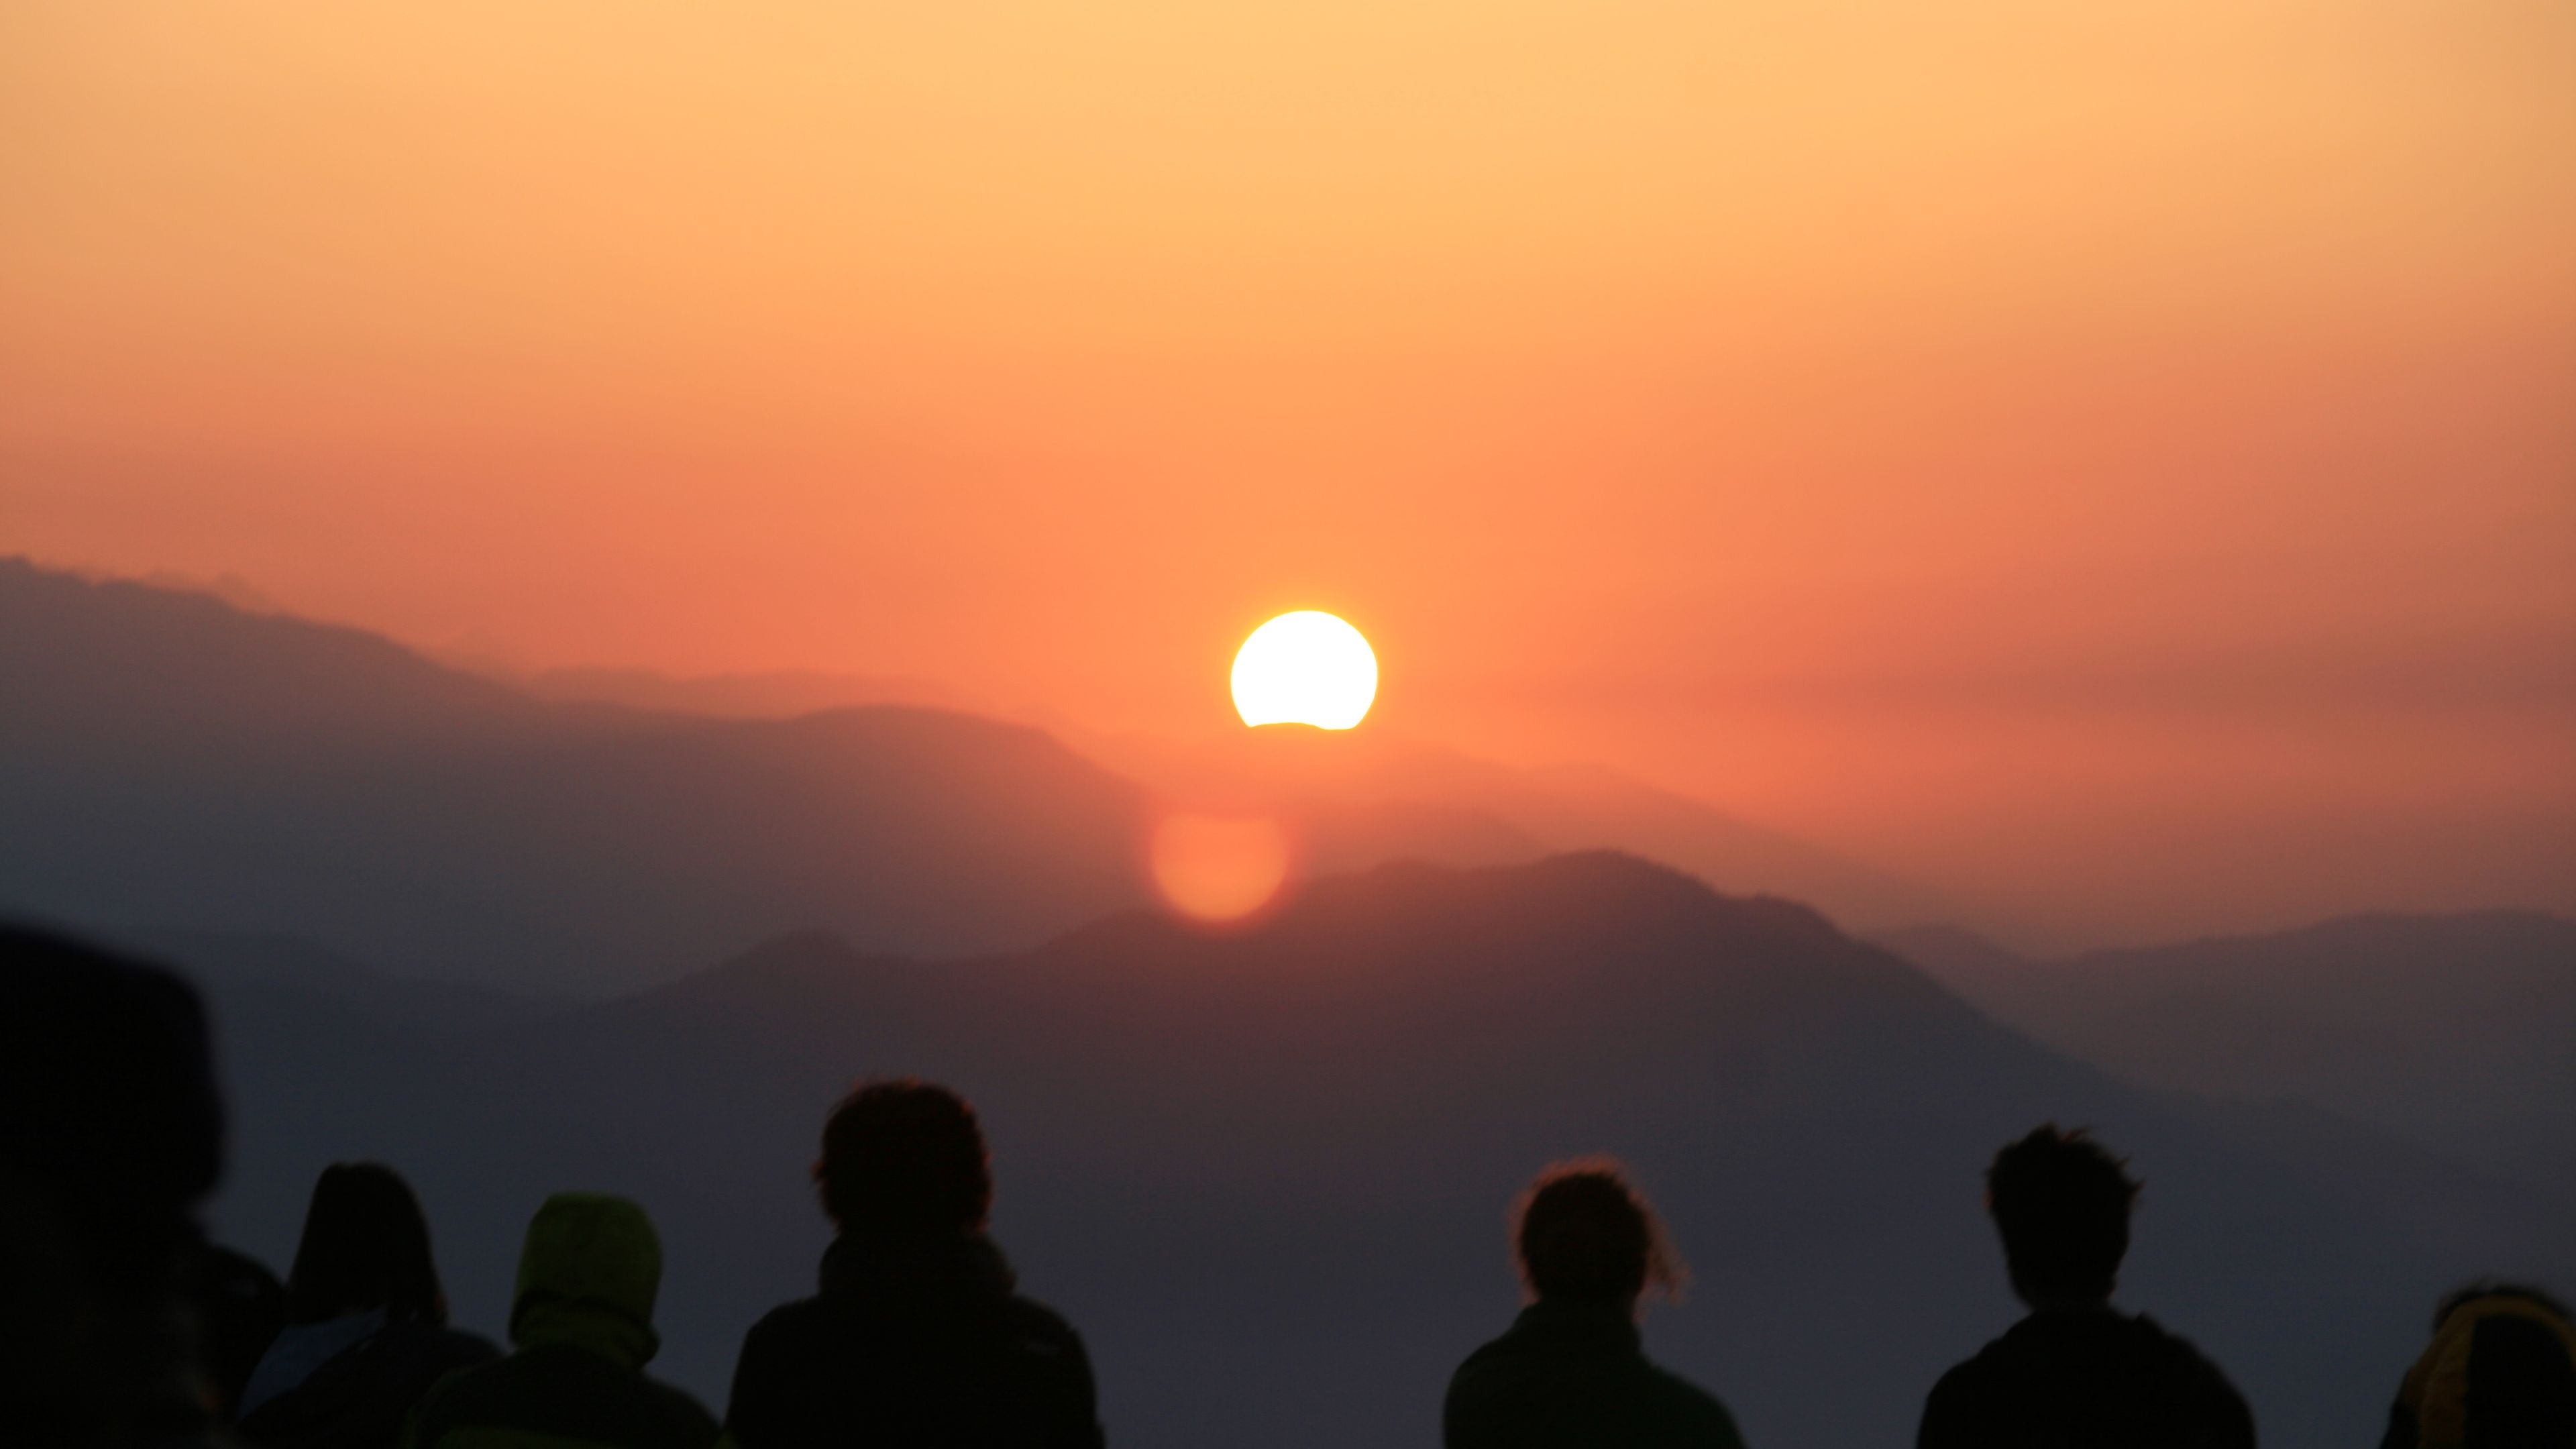 Teilnehmer des Rangerkurses in Bhutan fotografieren und beobachten den Sonnenuntergang ueber dem Gebirge